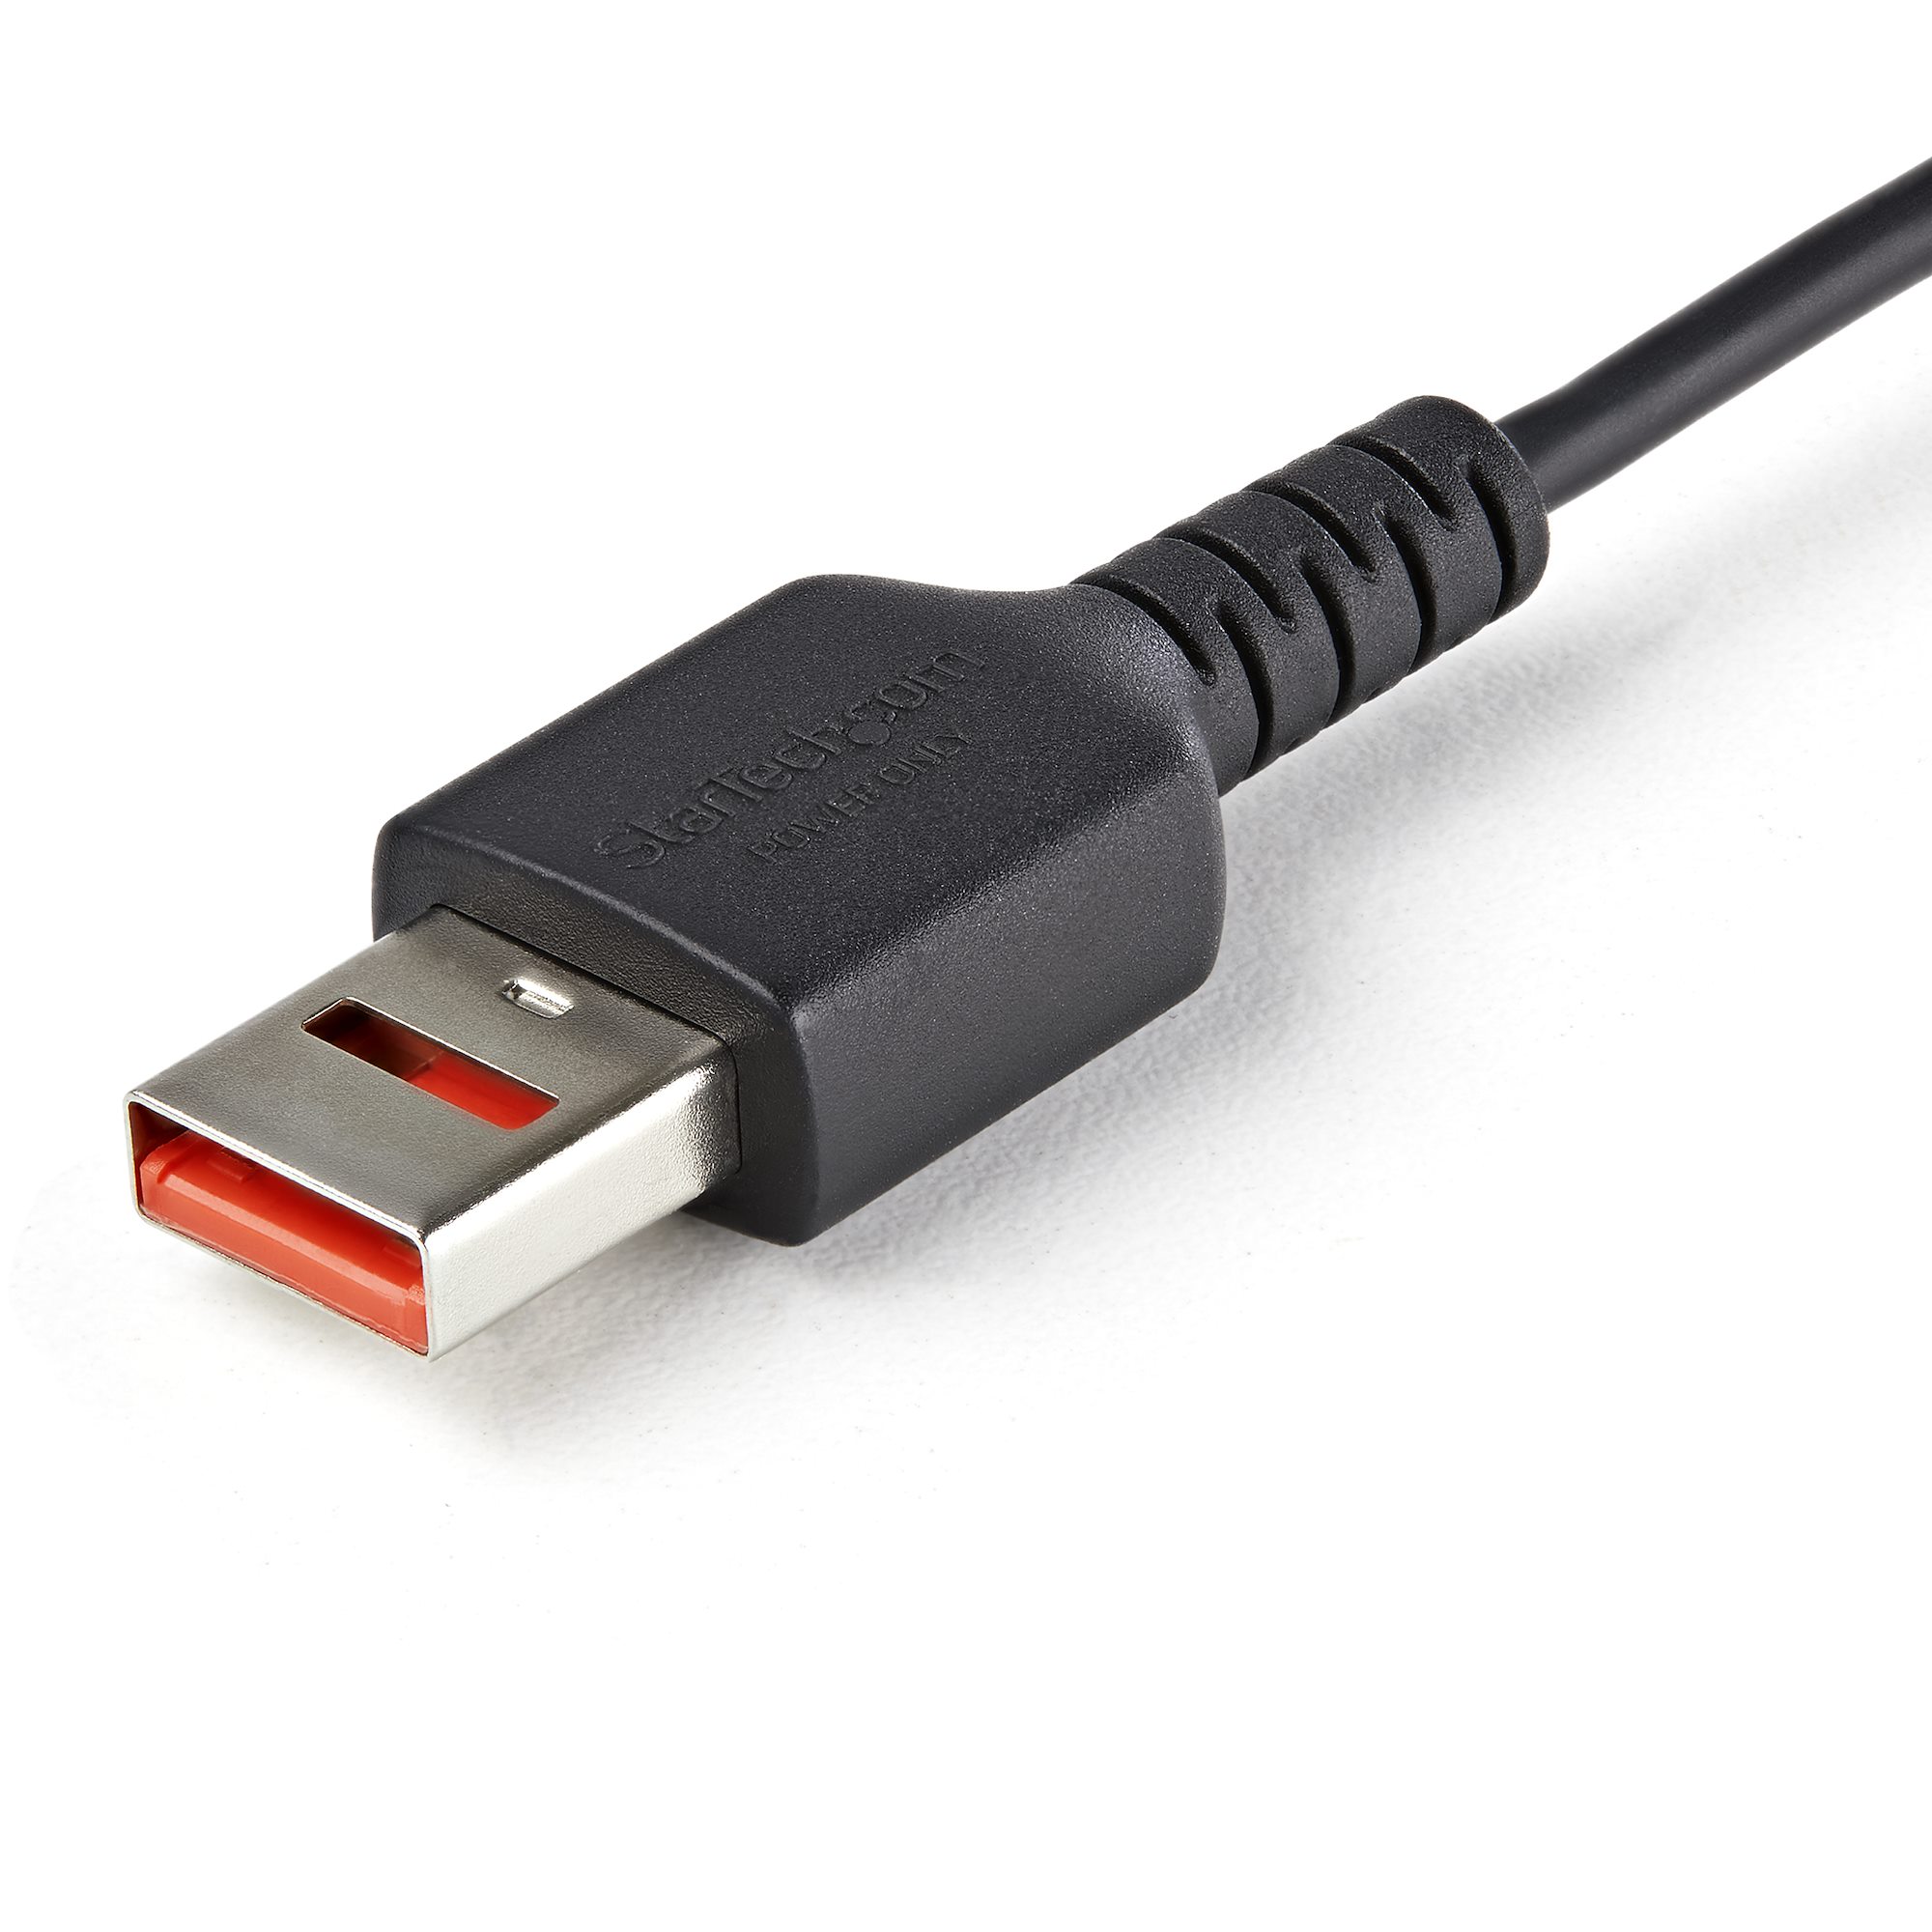 Cargador de pared USB-C con cable USB-C, carga segura y fiable